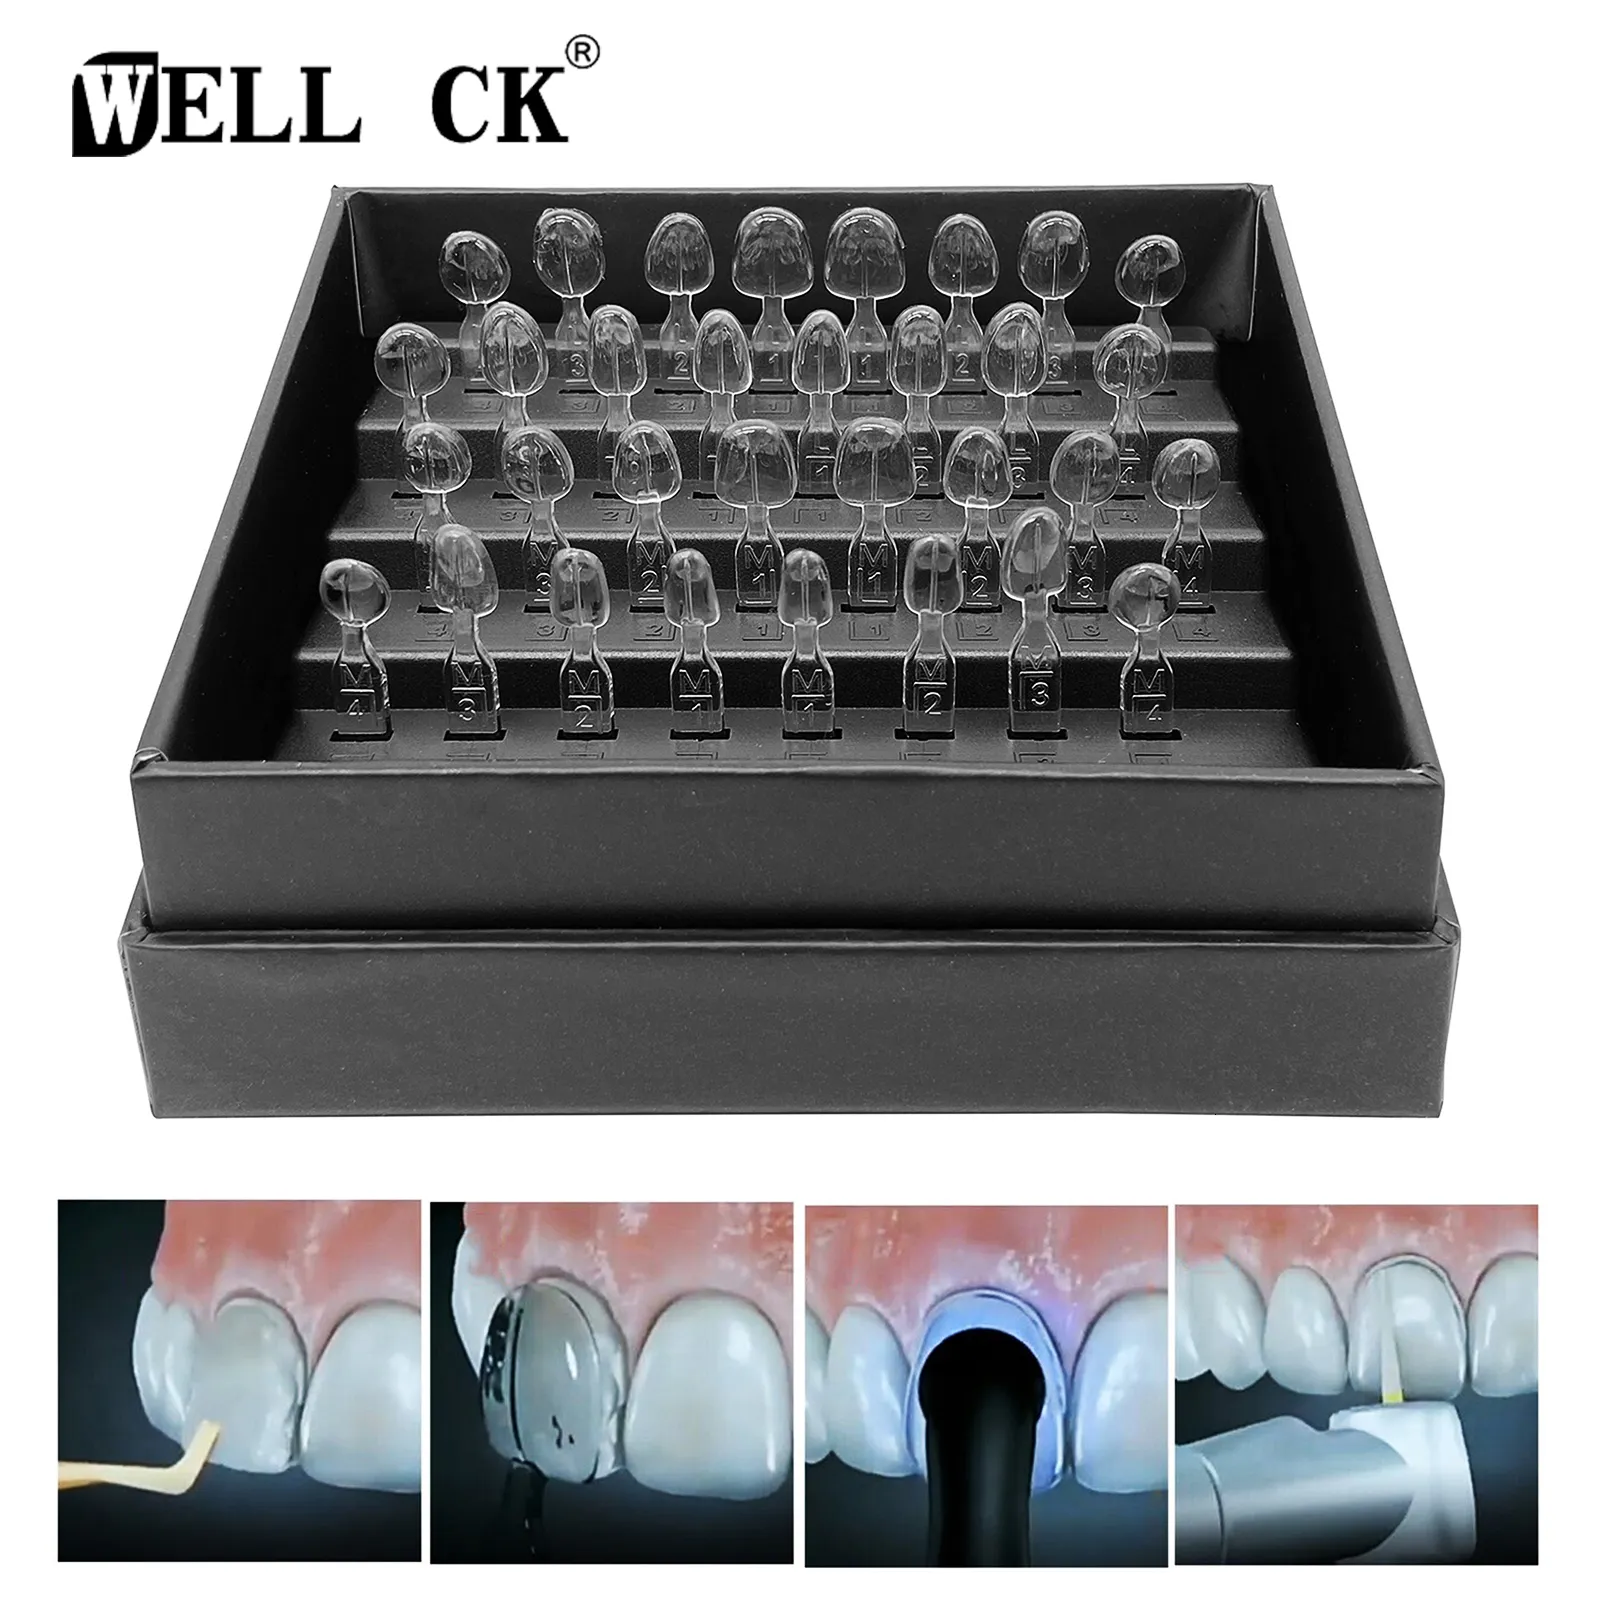 Altro Per l'igiene orale 32 pezzi Set Kit di stampi per impiallacciatura dentale Stampo in resina composita Fotopolimerizzazione Autoclave Strumenti per sbiancamento dei denti anteriori anteriori 230915